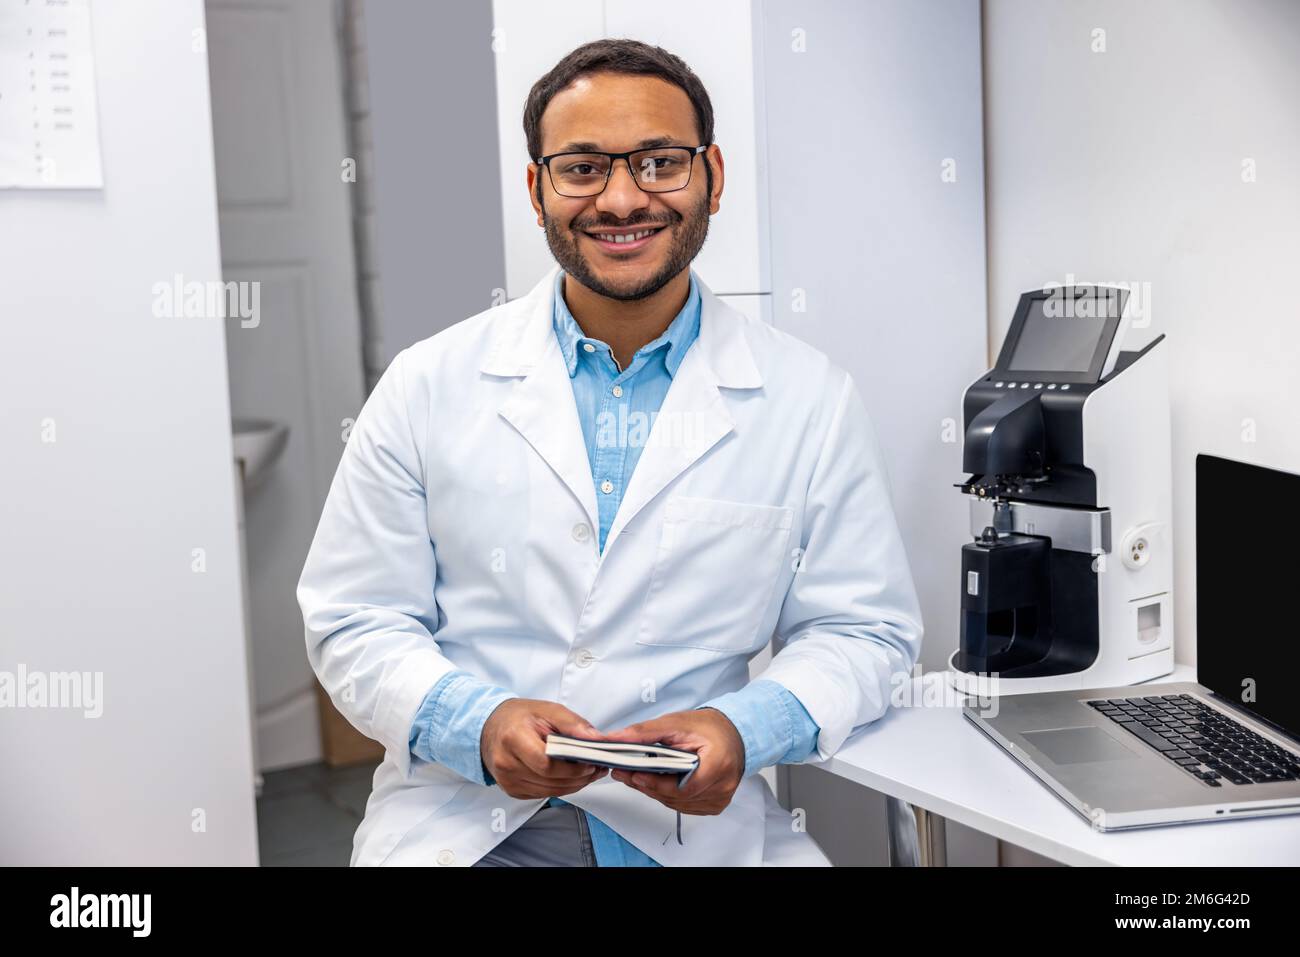 Un médecin de sexe masculin dans des lunettes de vue a l'air positif et amical Banque D'Images